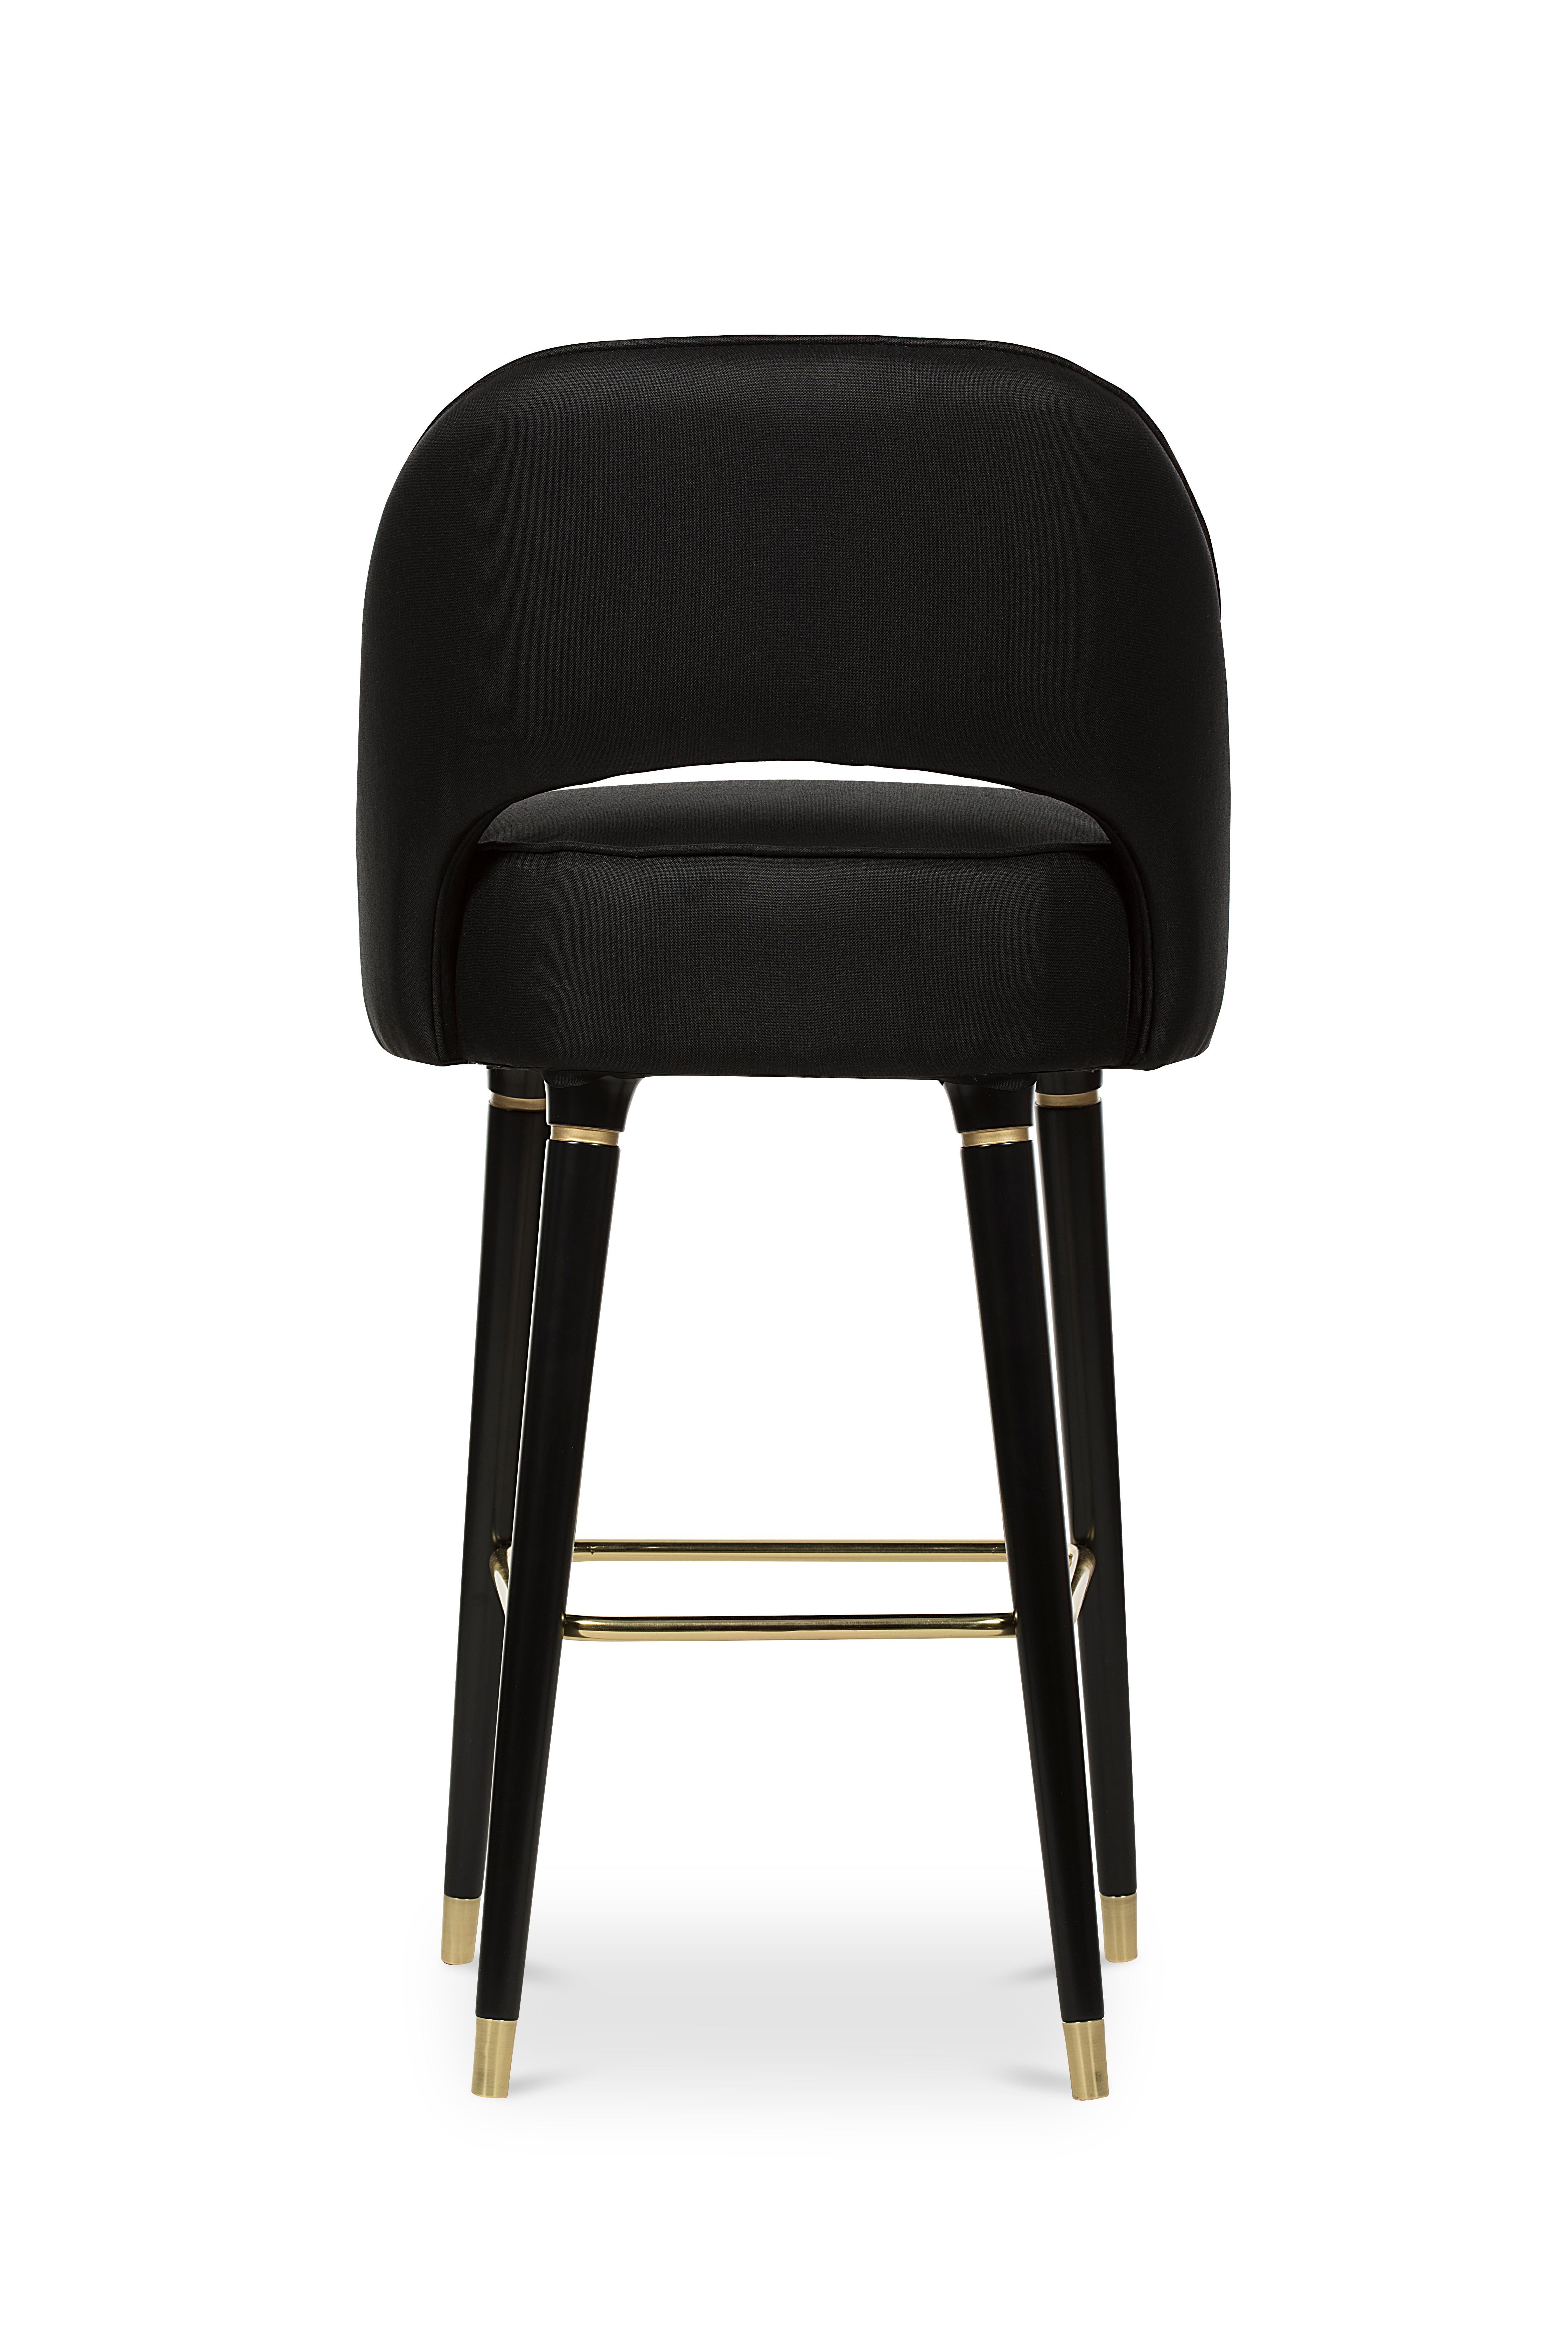 Collins ist ein Stuhl mit offener Rückenlehne, schlanken Linien und subtilen Details. Die glamourösen, glänzenden Beine mit den polierten Messingspitzen verleihen diesem Möbelstück einen modernen Touch der Jahrhundertmitte. Der Collins Bar Chair